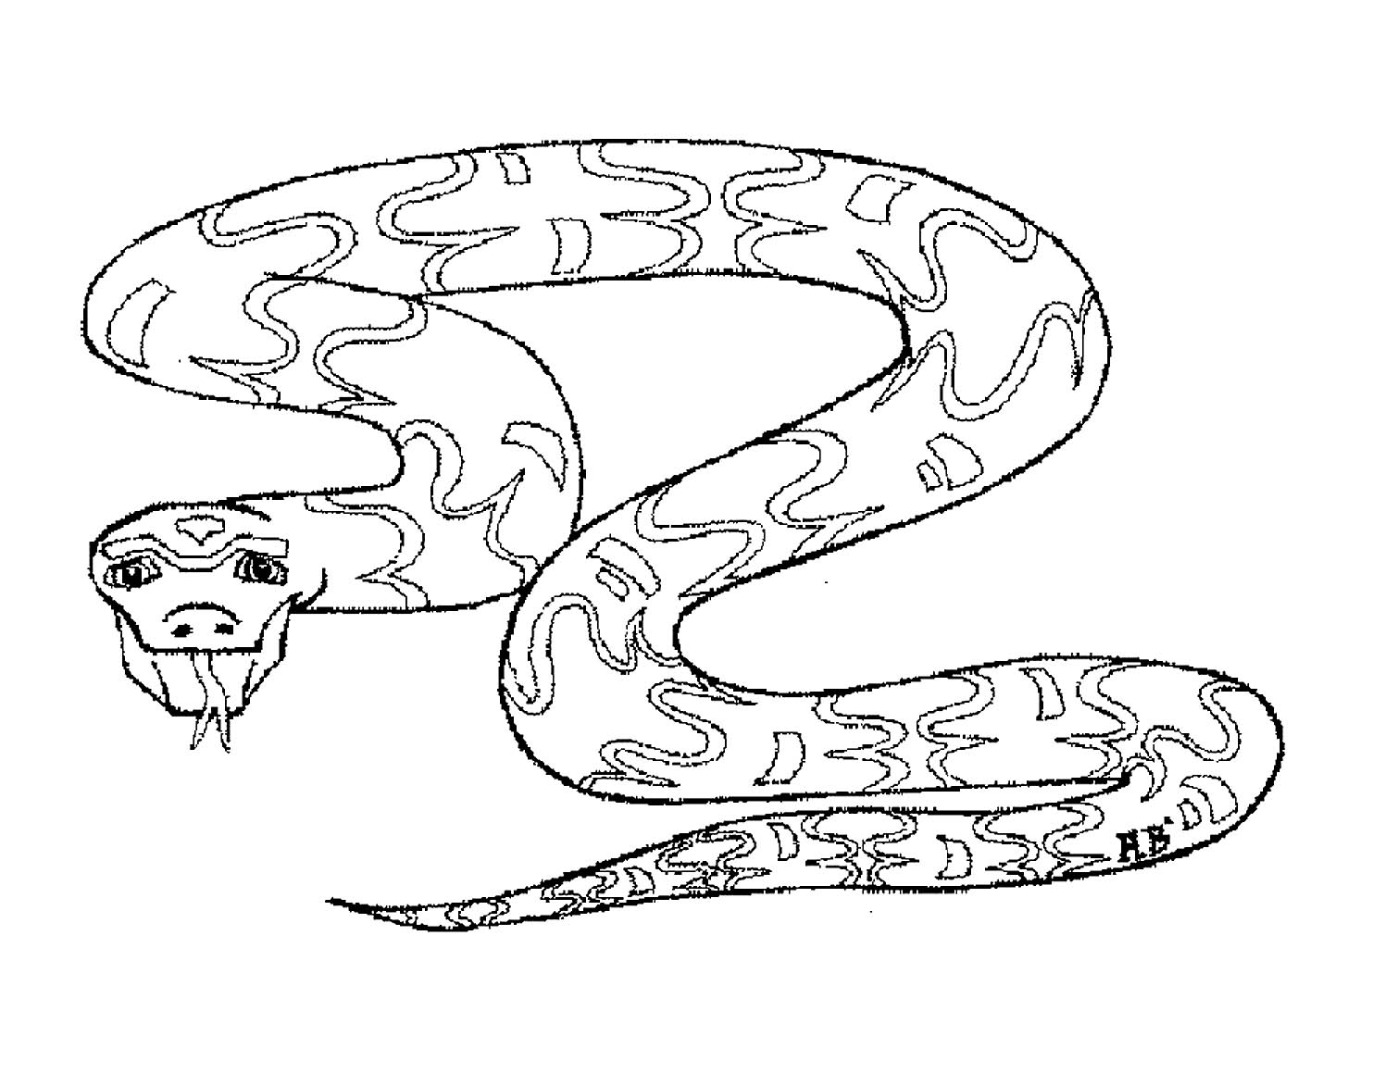 Раскраски змей распечатать. Змея раскраска. Раскраски змей. Раскраска змеи для детей. Змея раскраска для детей.